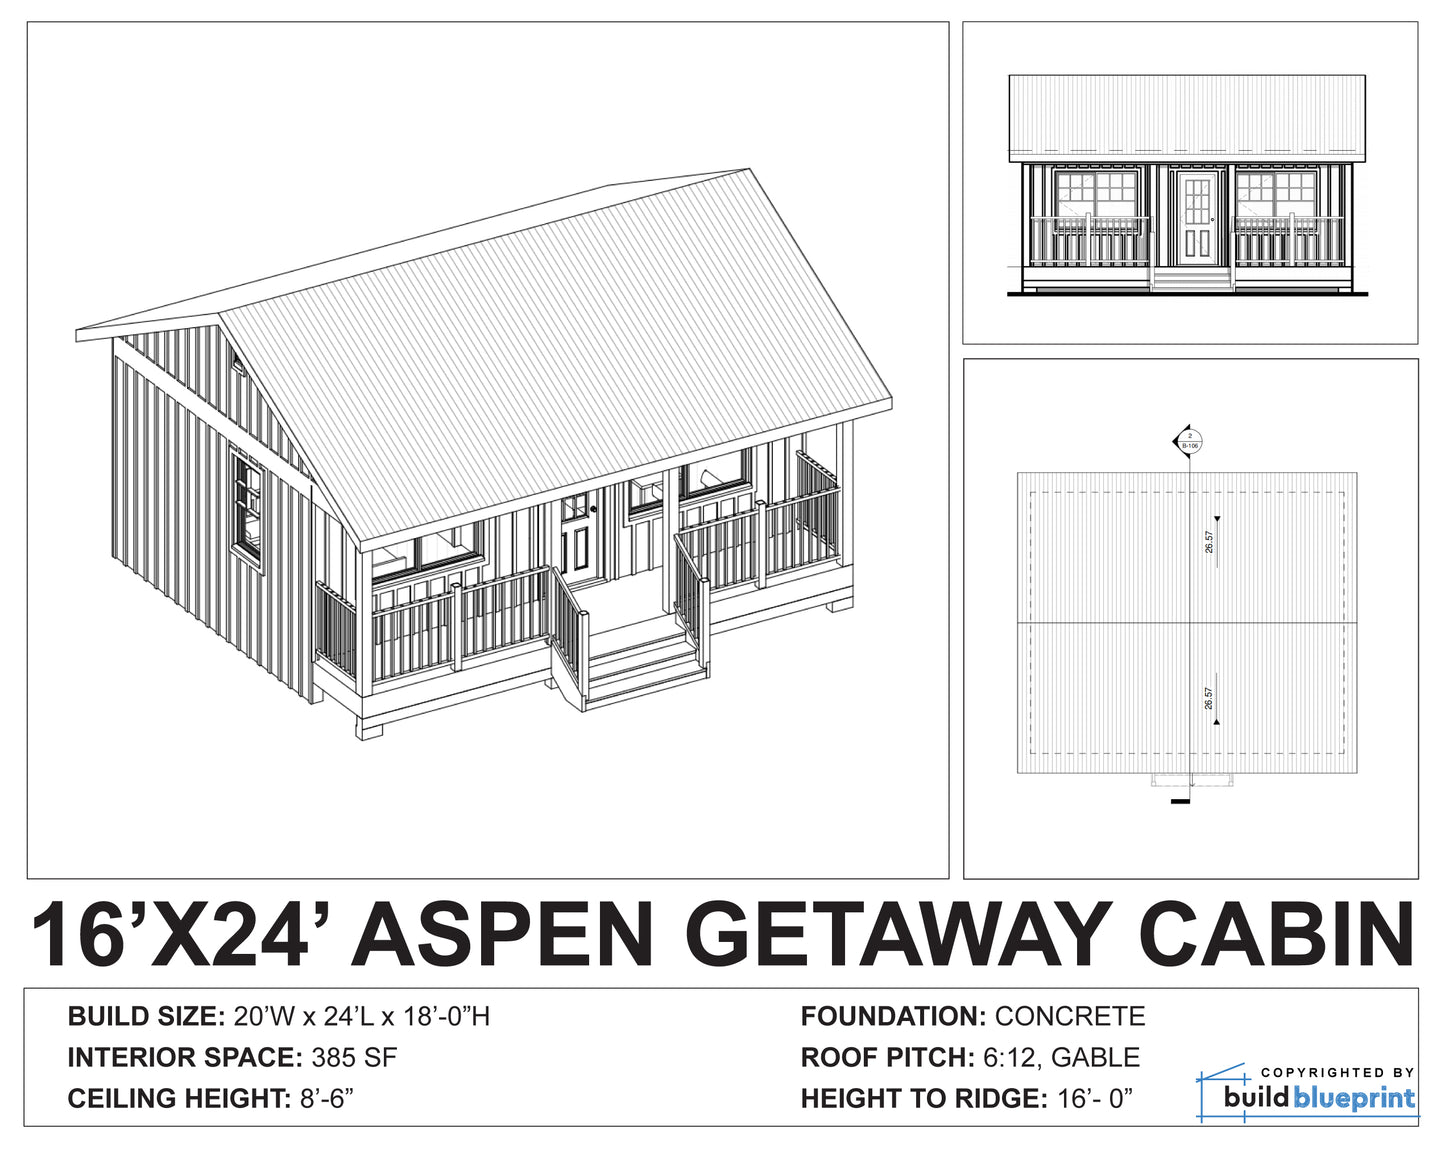 16' x 24' Aspen Cabin Architectural Plans